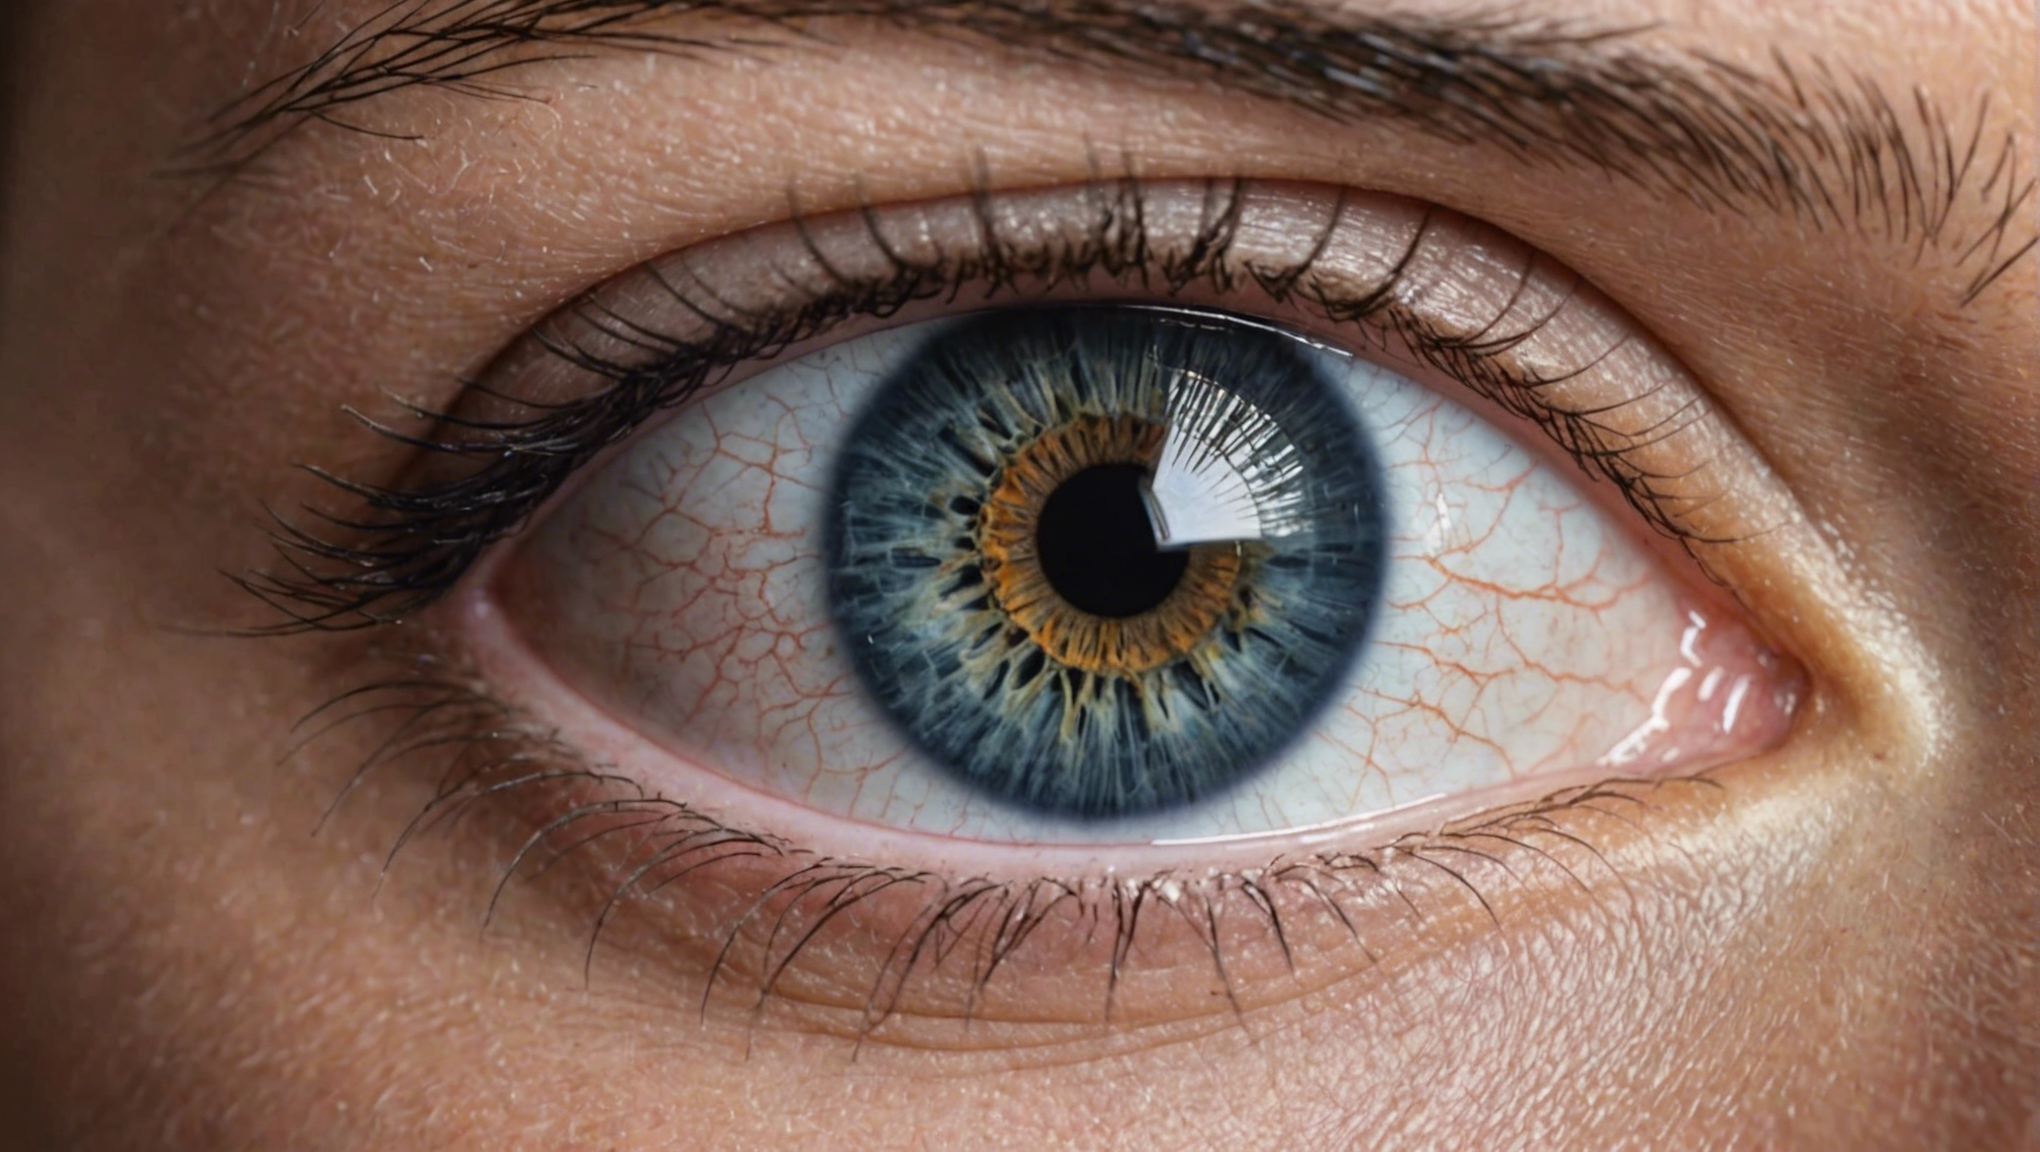 découvrez les risques et les complications possibles liés à l'opération des yeux. informez-vous sur les potentielles difficultés et précautions à prendre.